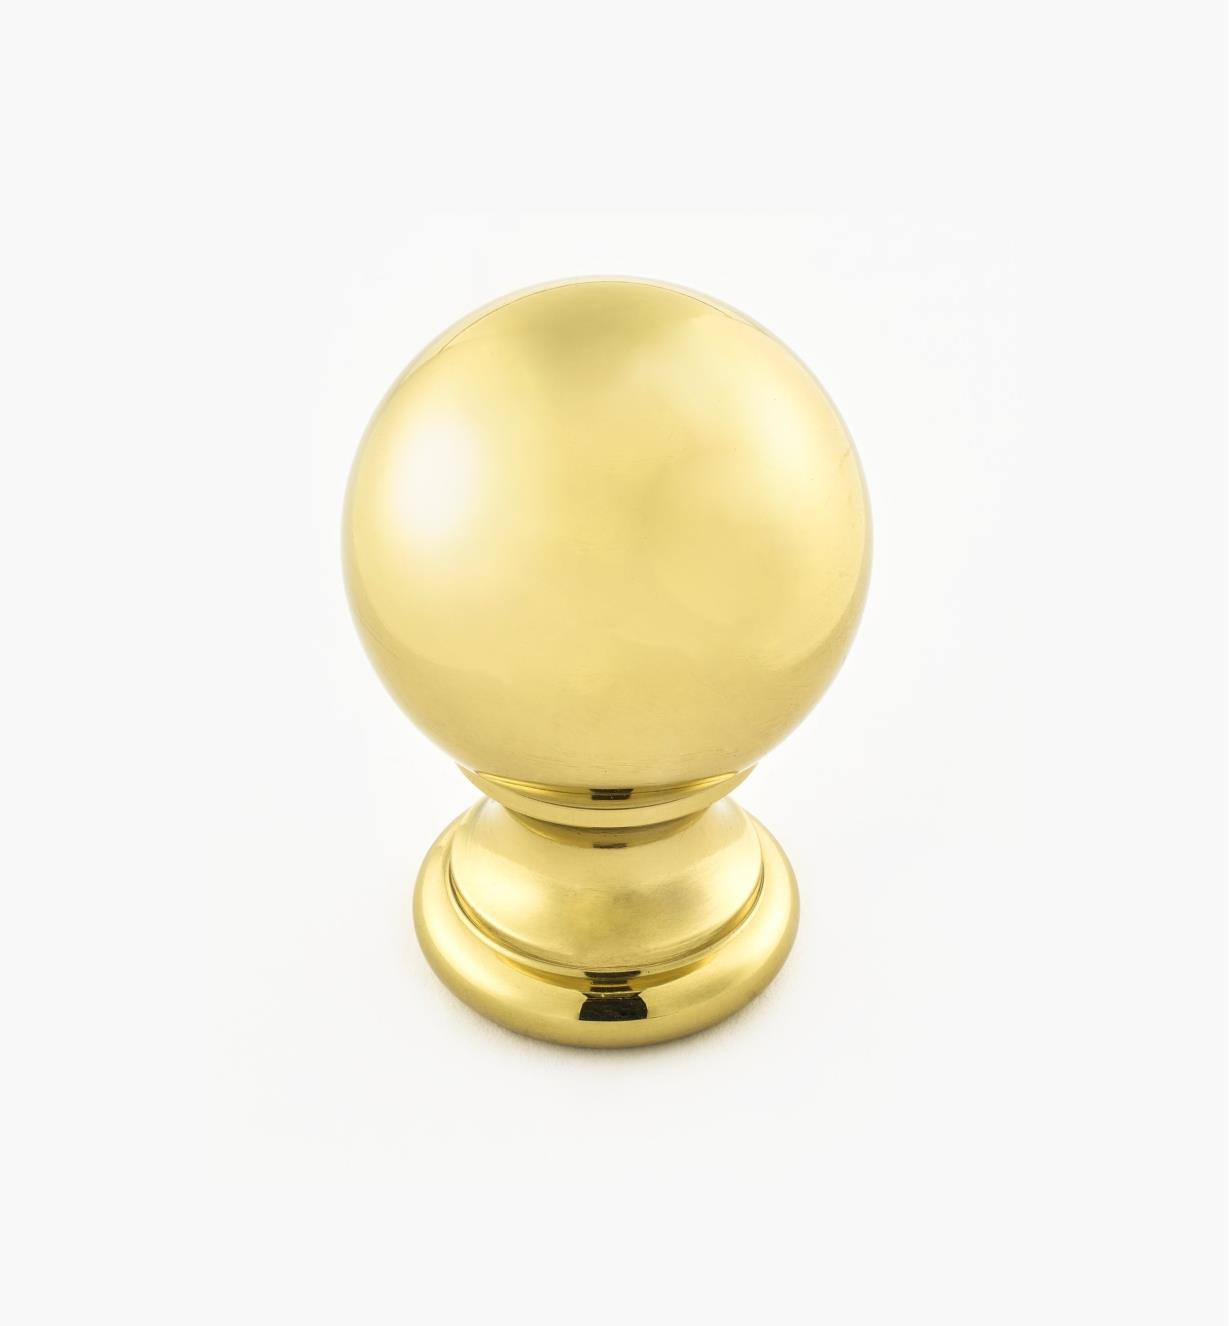 02W3204 - Polished Brass Suite - 1 1/8" x 1 3/4" Turned Brass Ball Knob